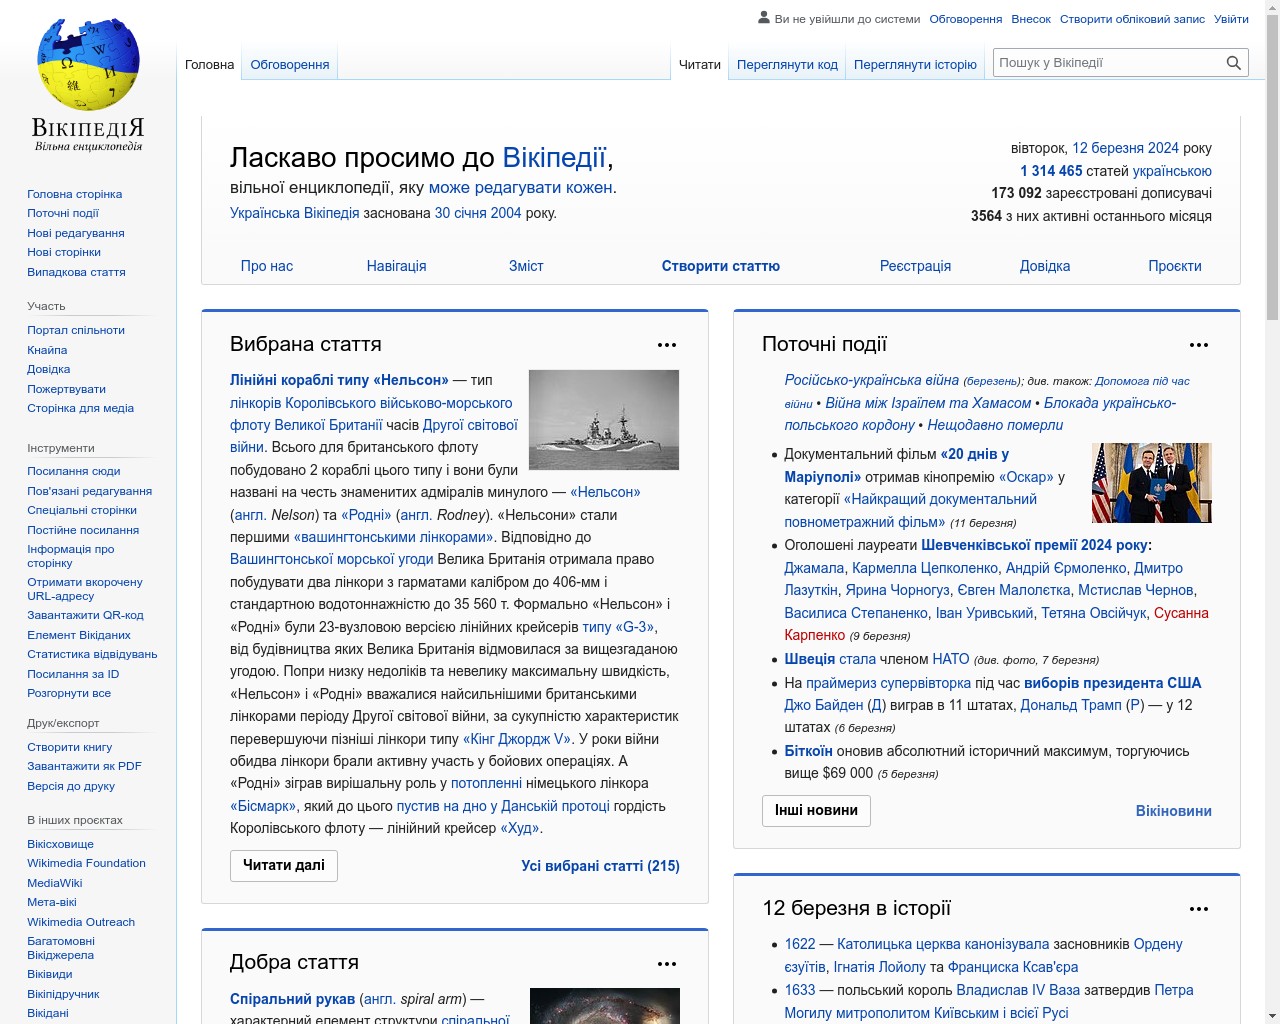 Изображение скриншота сайта - Один з найкращих сайтів, на якому можна знайти інформацію про різноманітні теми - це Wikipedia